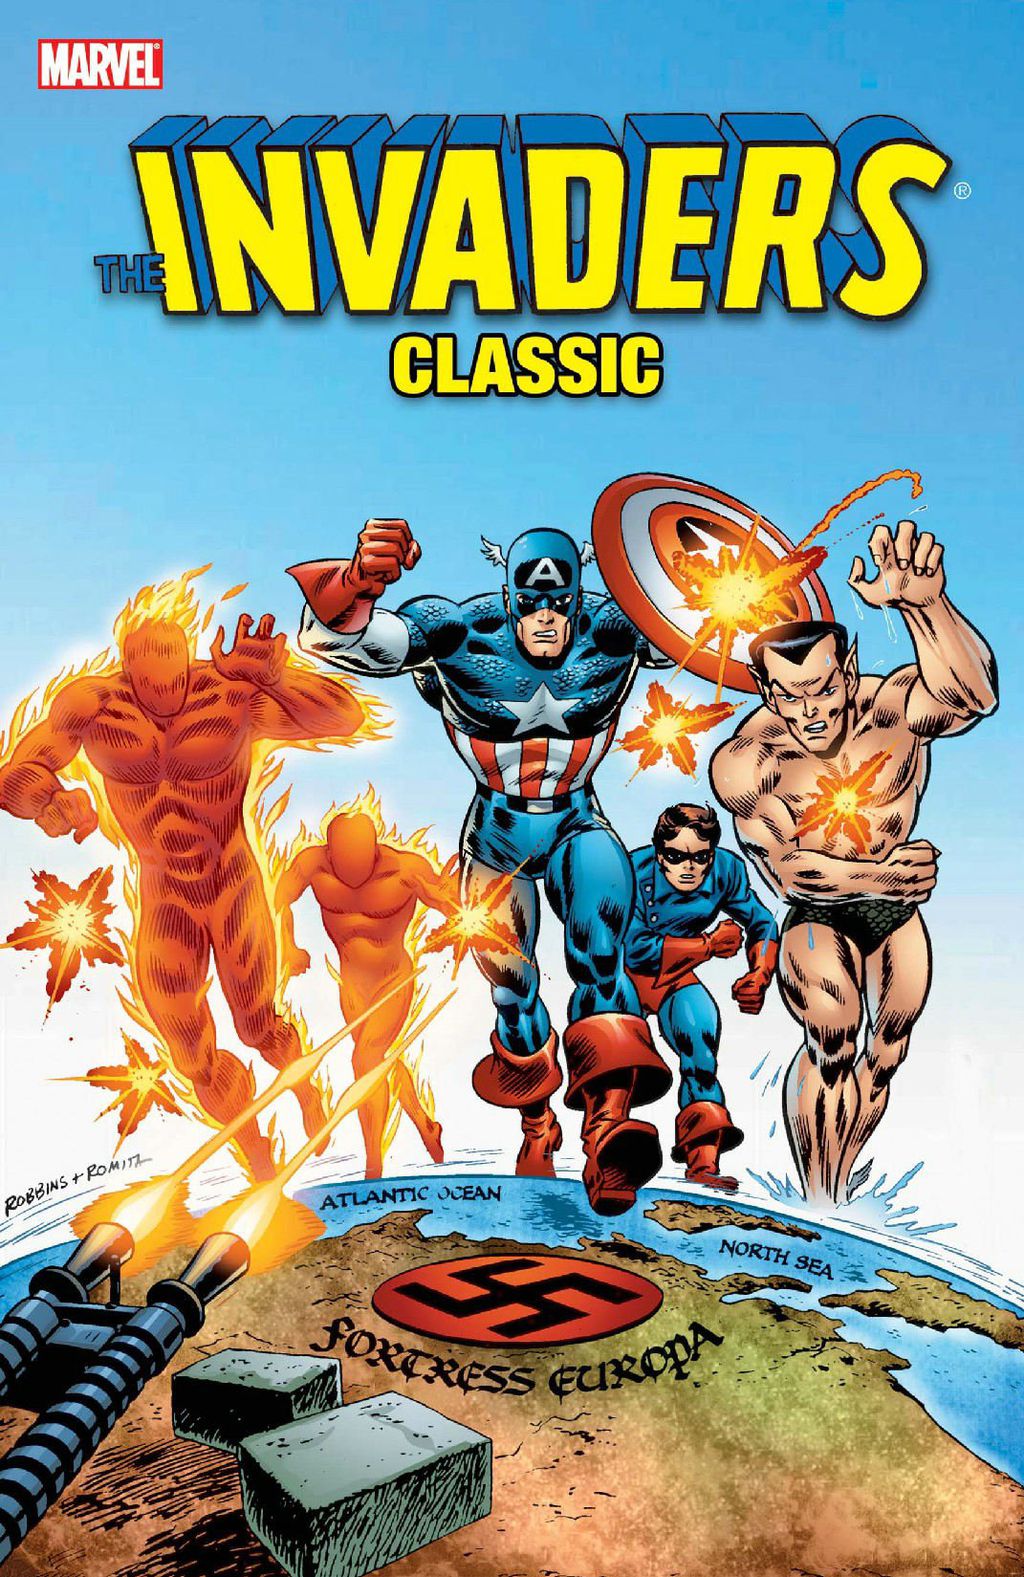 Os heróis mirins Centelha, 2º à esquerda; e Bucky, 4º à esquerda. (Imagem: Divulgação/Marvel)